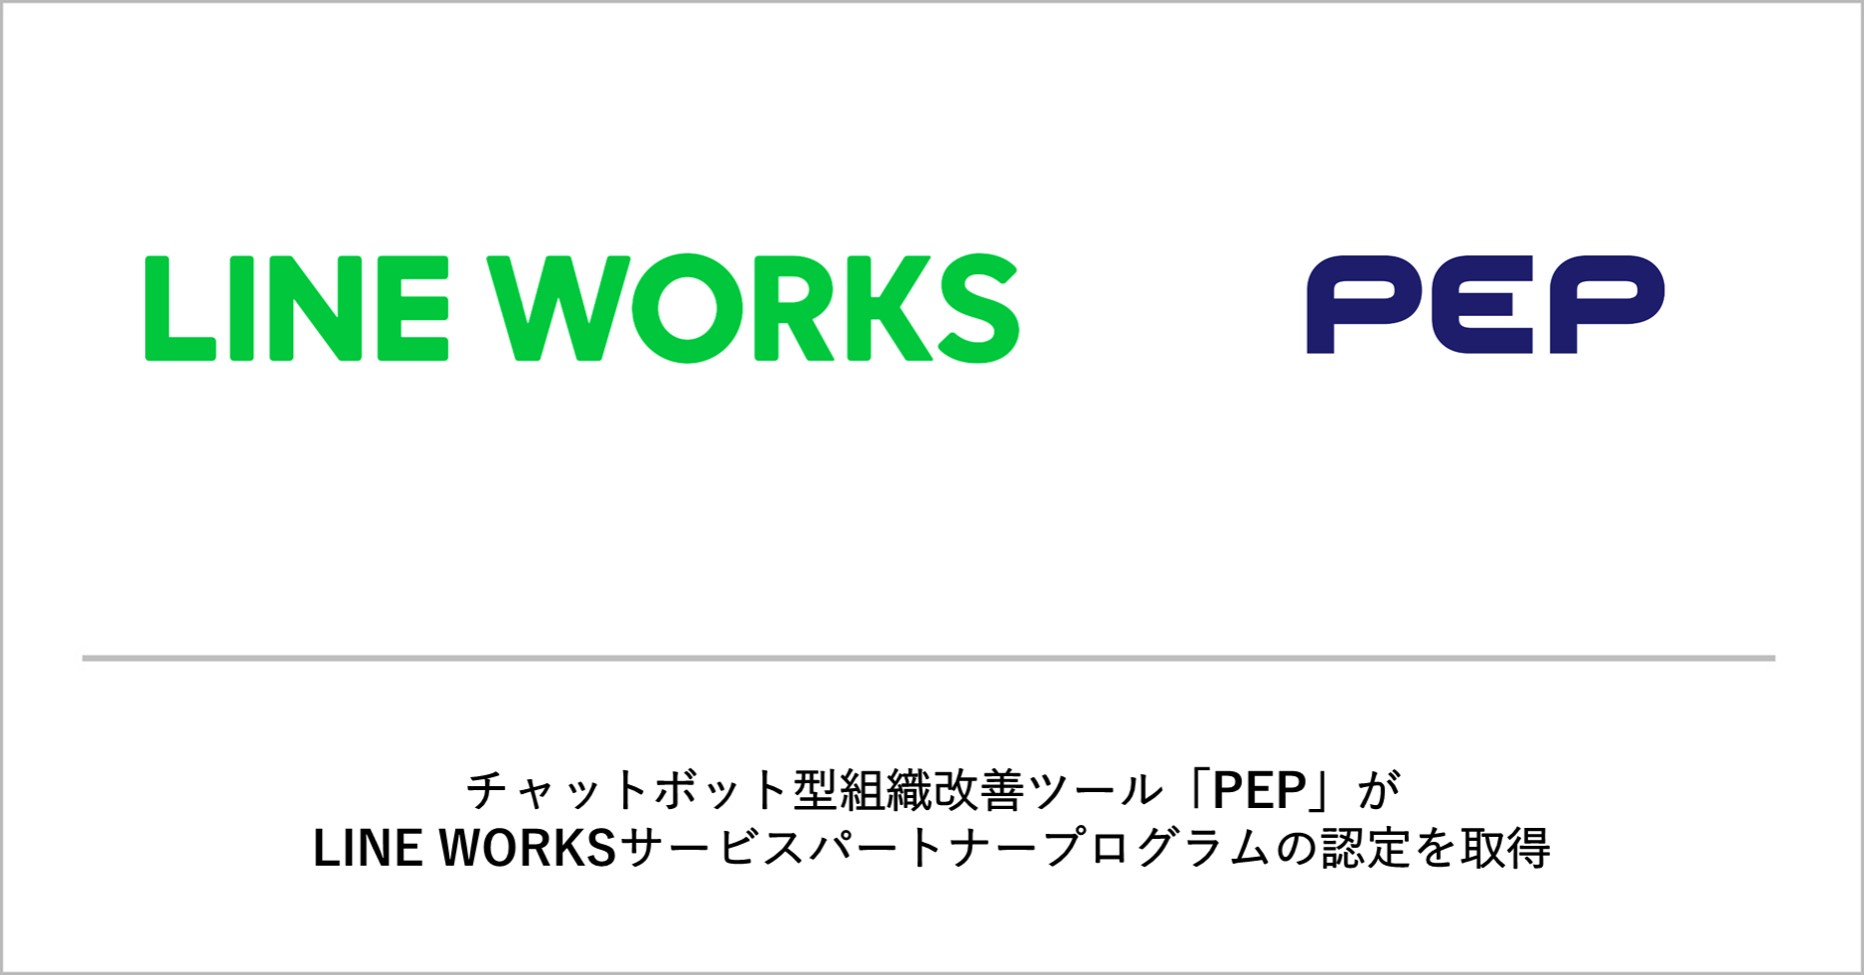 チャットボット型組織改善ツール「PEP」を提供するギブリーが、LINE WORKSサービスパートナープログラムの認定を取得